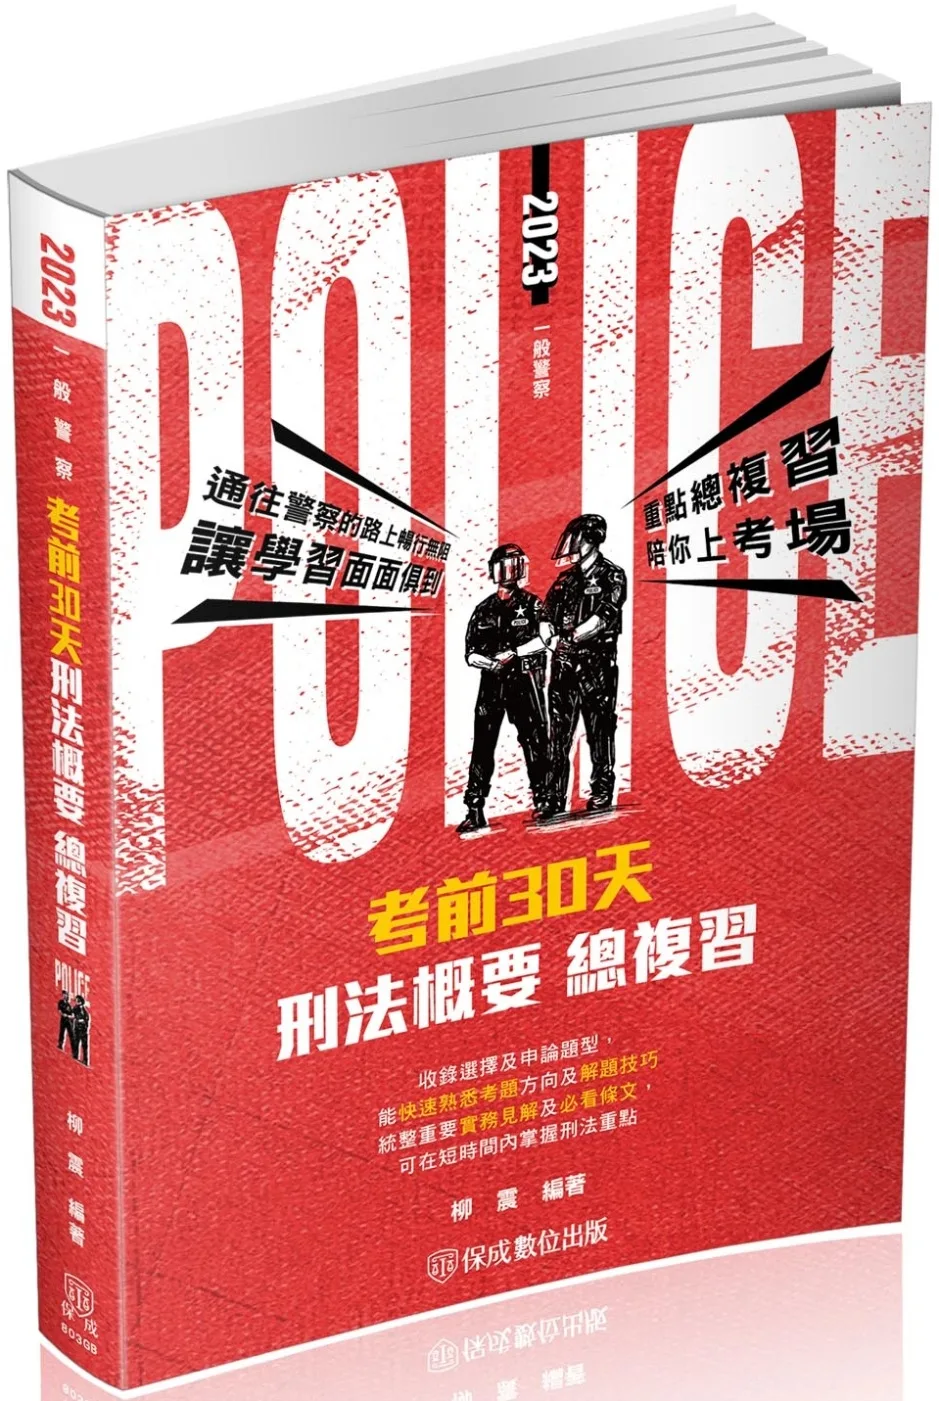 考前30天-刑法概要-一般行政警察四等(保成)(二版)